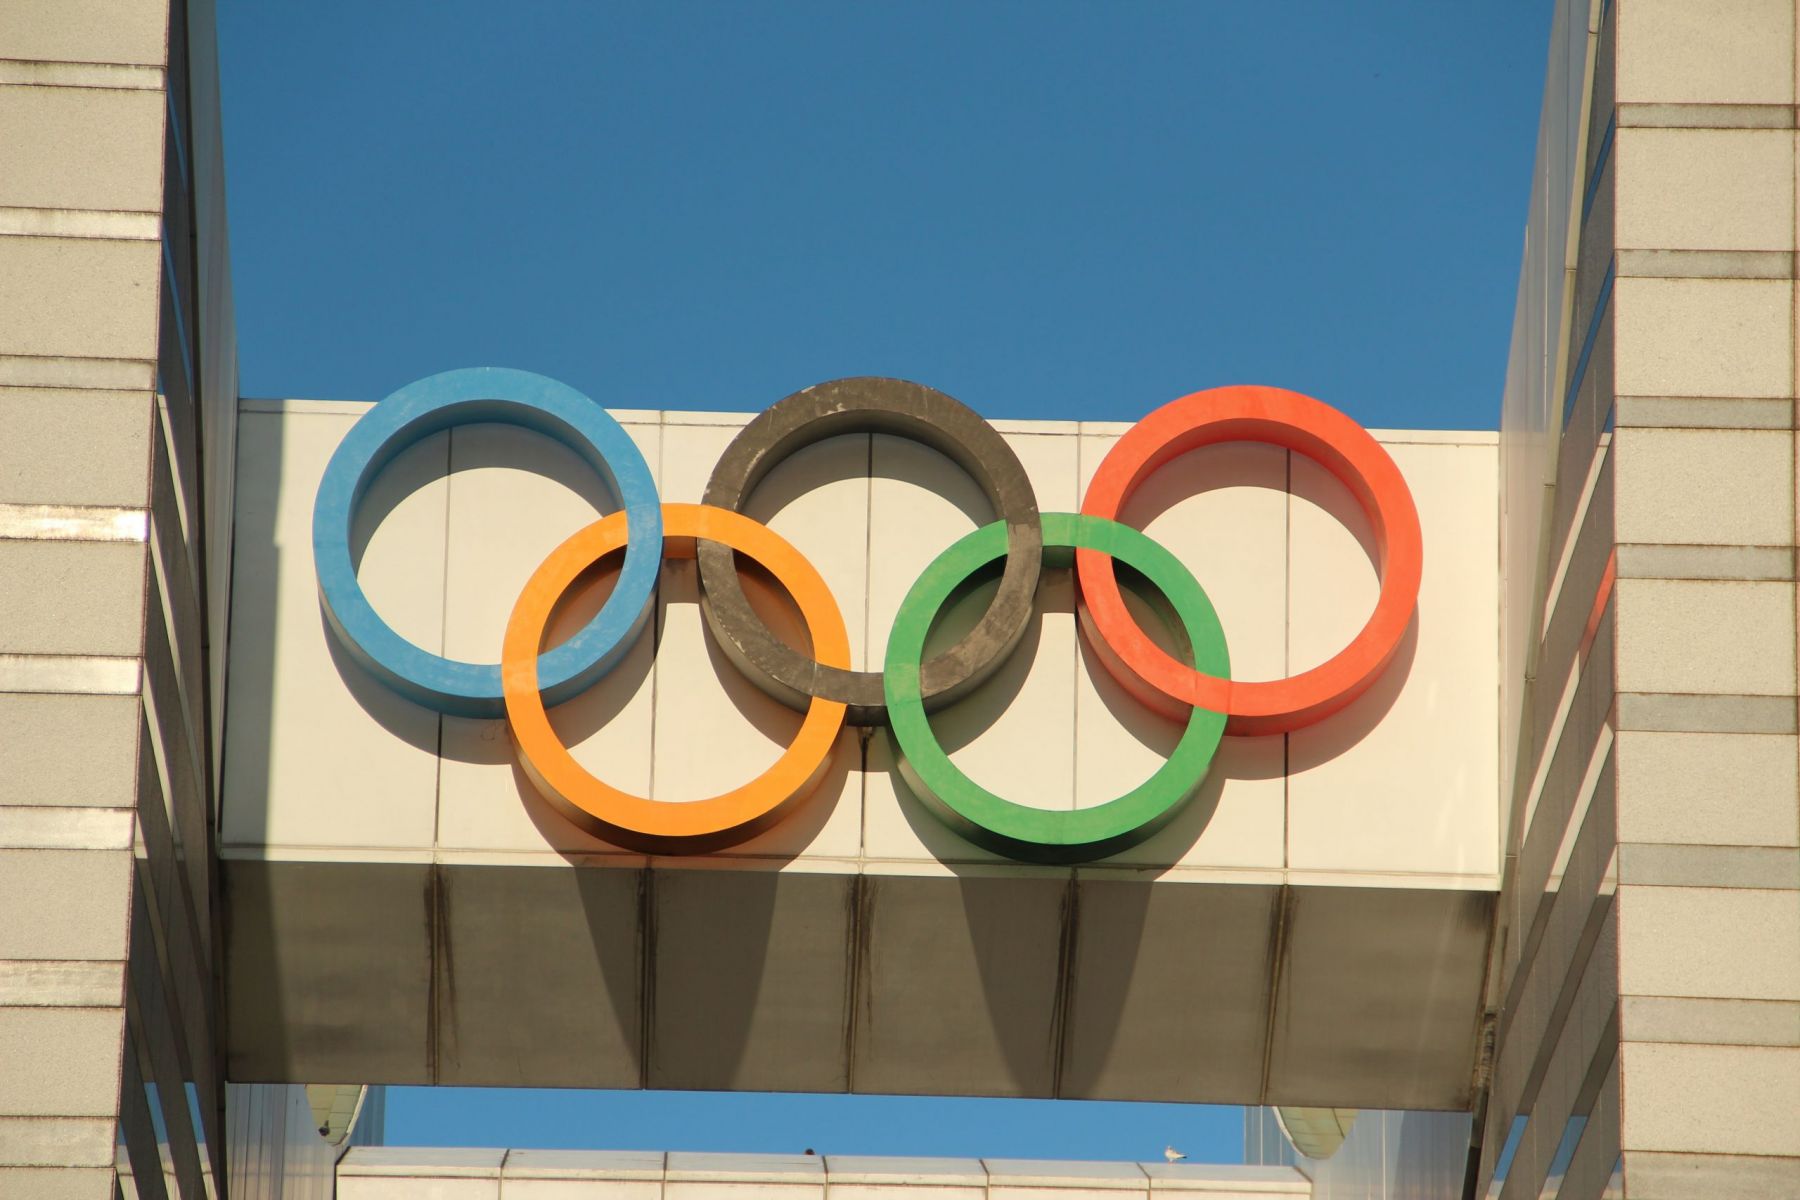 Ολυμπιακοί Αγώνες ακύρωση: Πάνω από 200.000 υπογραφές μέσα σε δύο ημέρες από τους Ιάπωνες